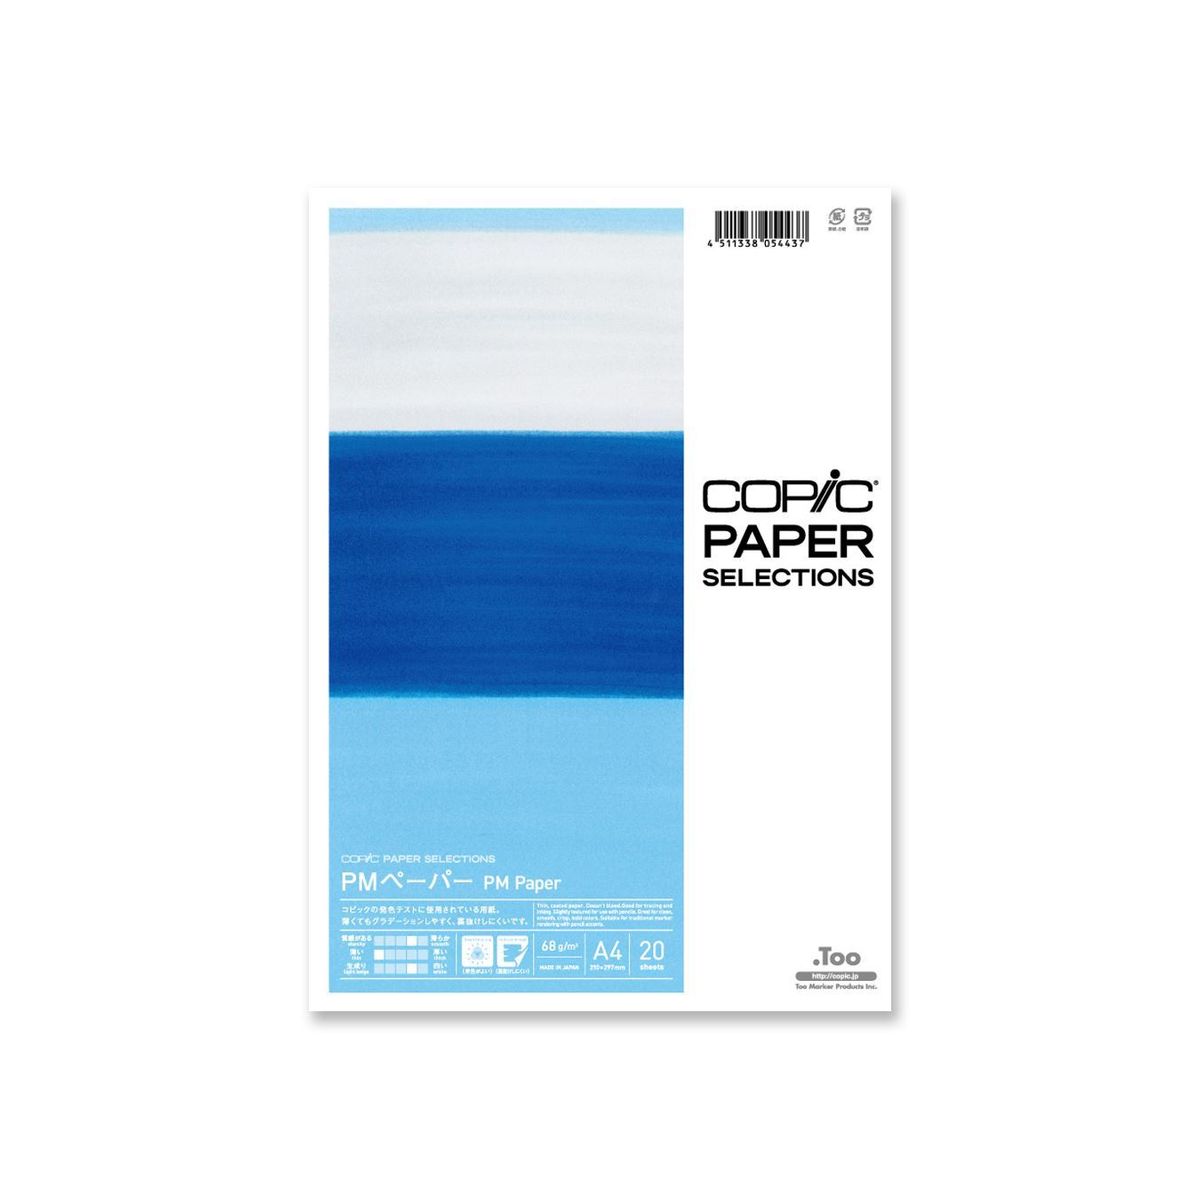 Papel Copic Pm (pencil Marker) A4 68g/m² 20 Folhas